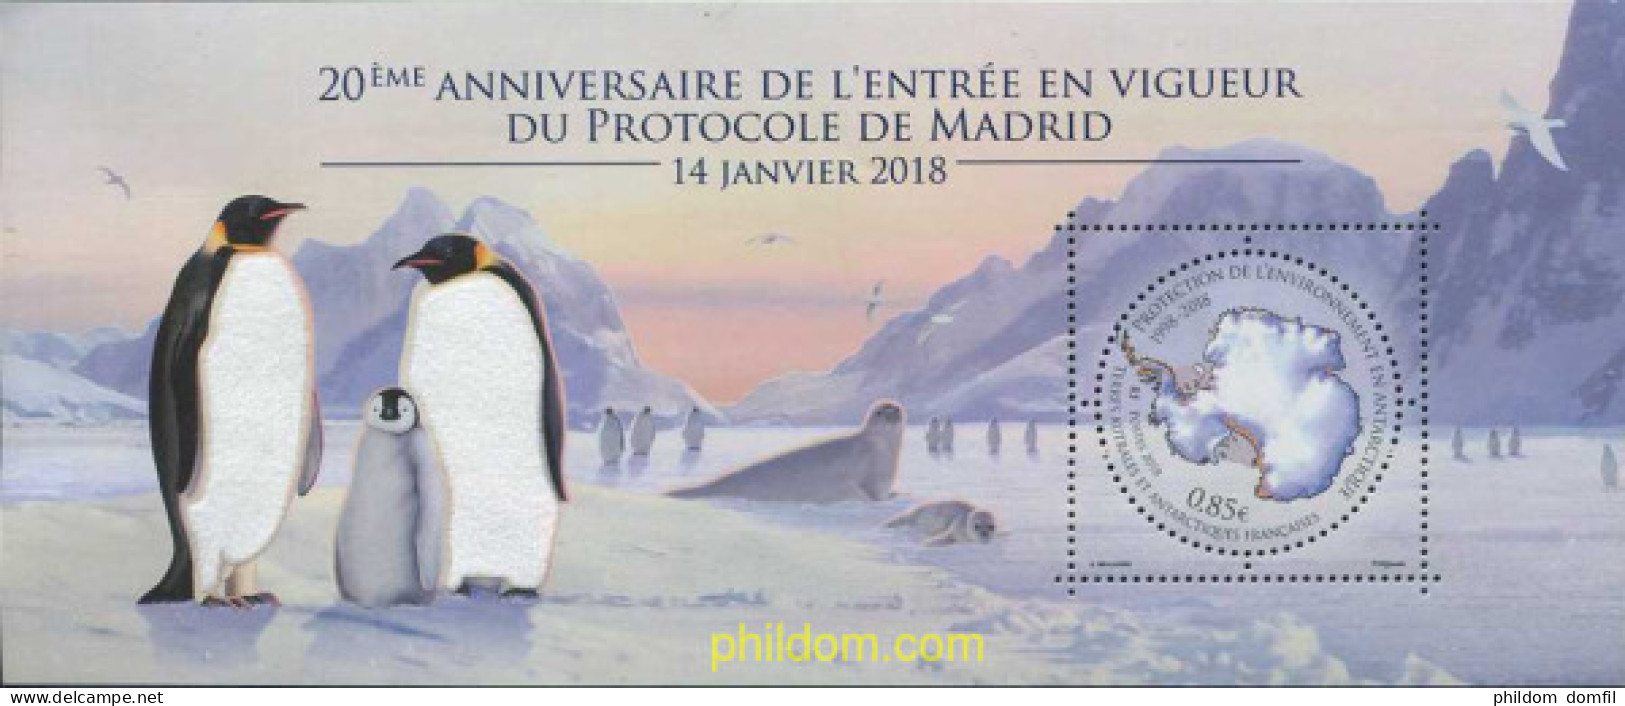 590530 MNH ANTARTIDA FRANCESA 2018 ANTARTICA FRANCESA - Unused Stamps